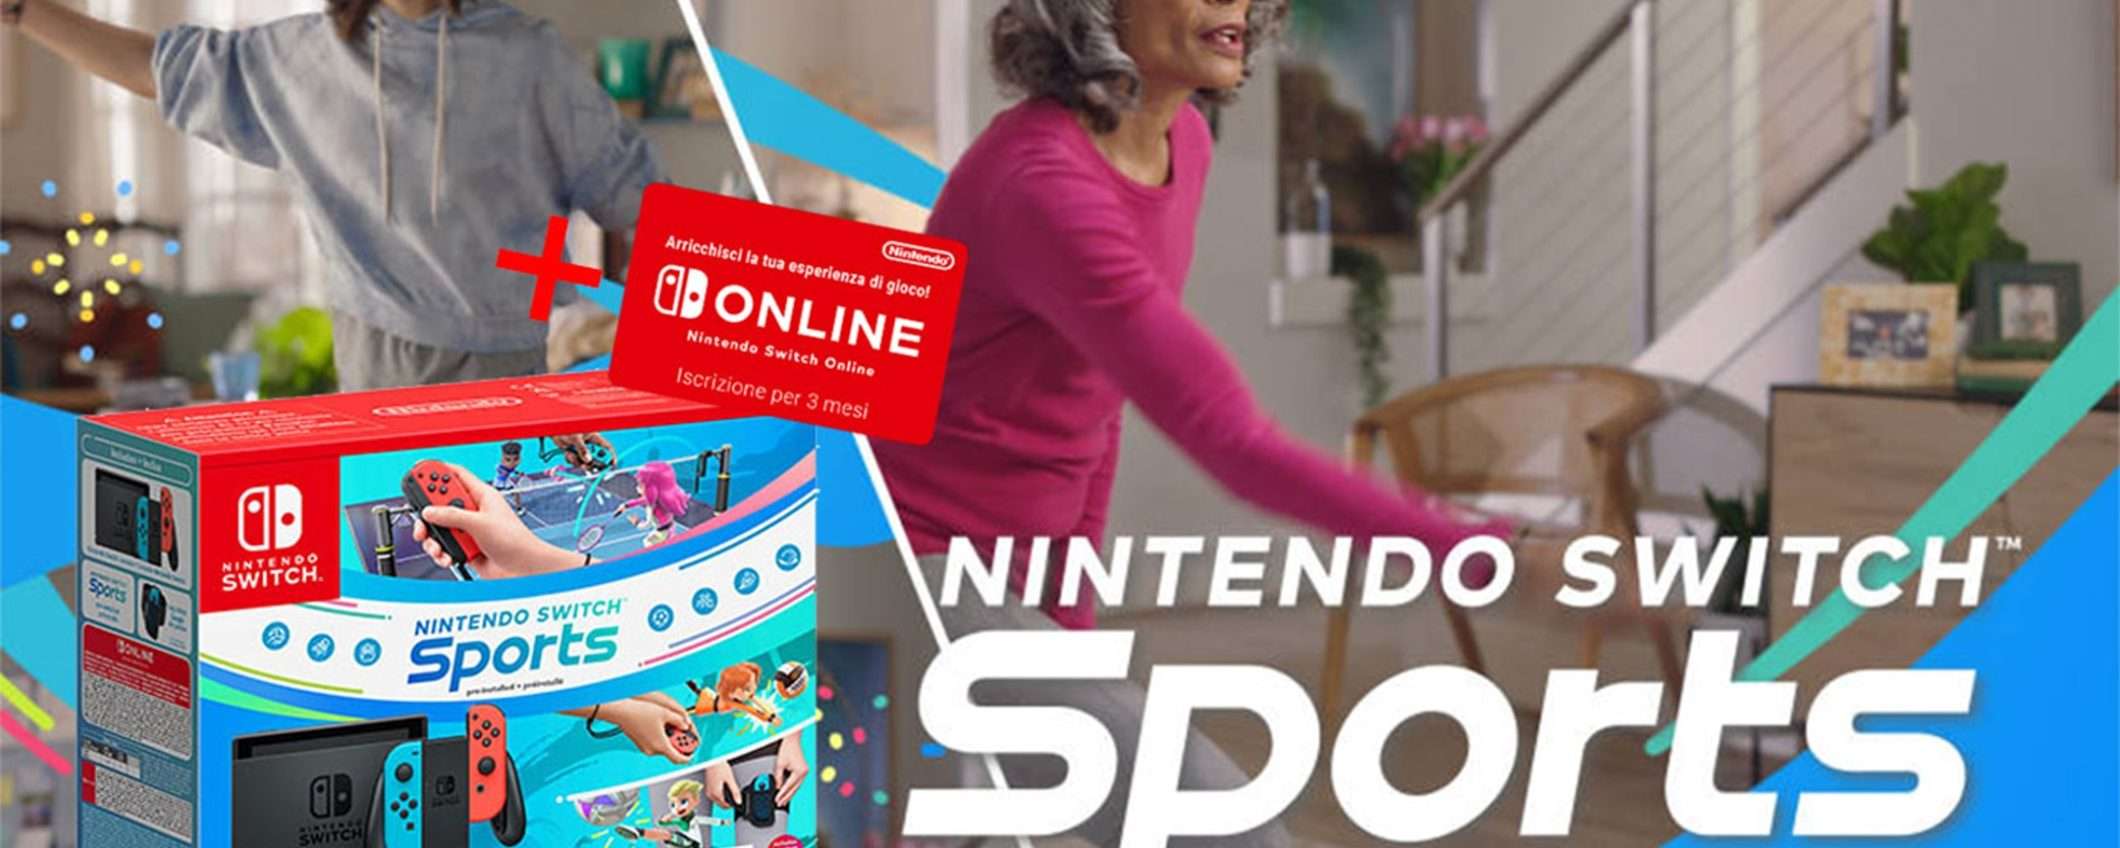 Nintendo Switch + Switch Sports: su eBay fate l'affare del giorno (CODICE SCONTO)